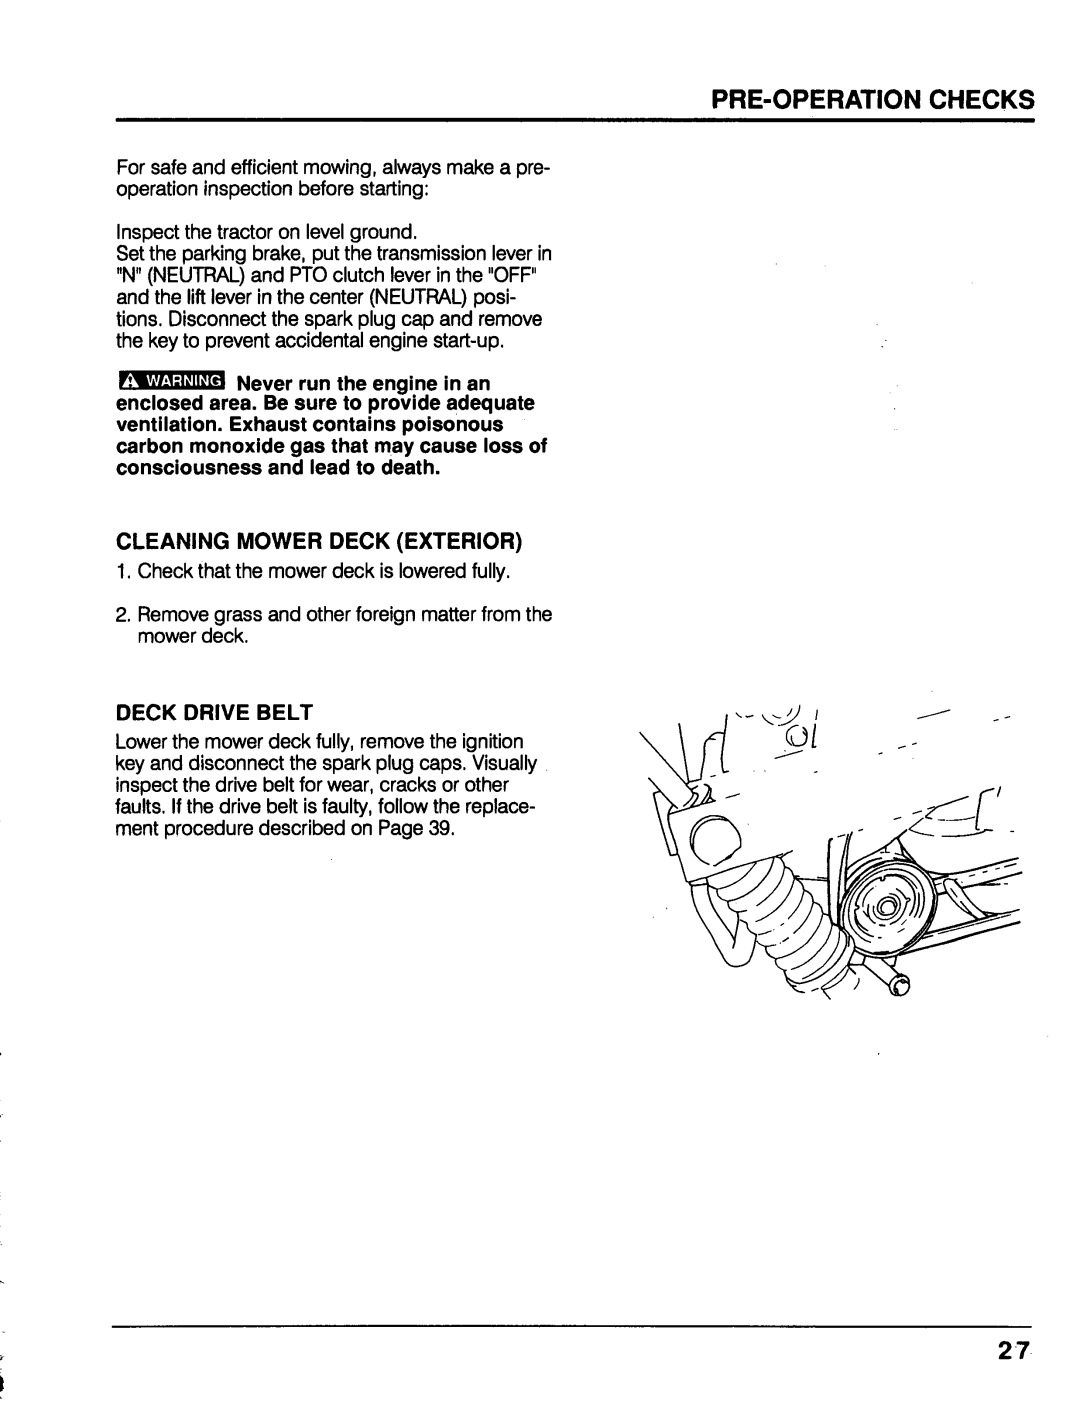 Honda Power Equipment MM52 manual Cleaning Mower Deck Exterior, Deck Drive Belt 